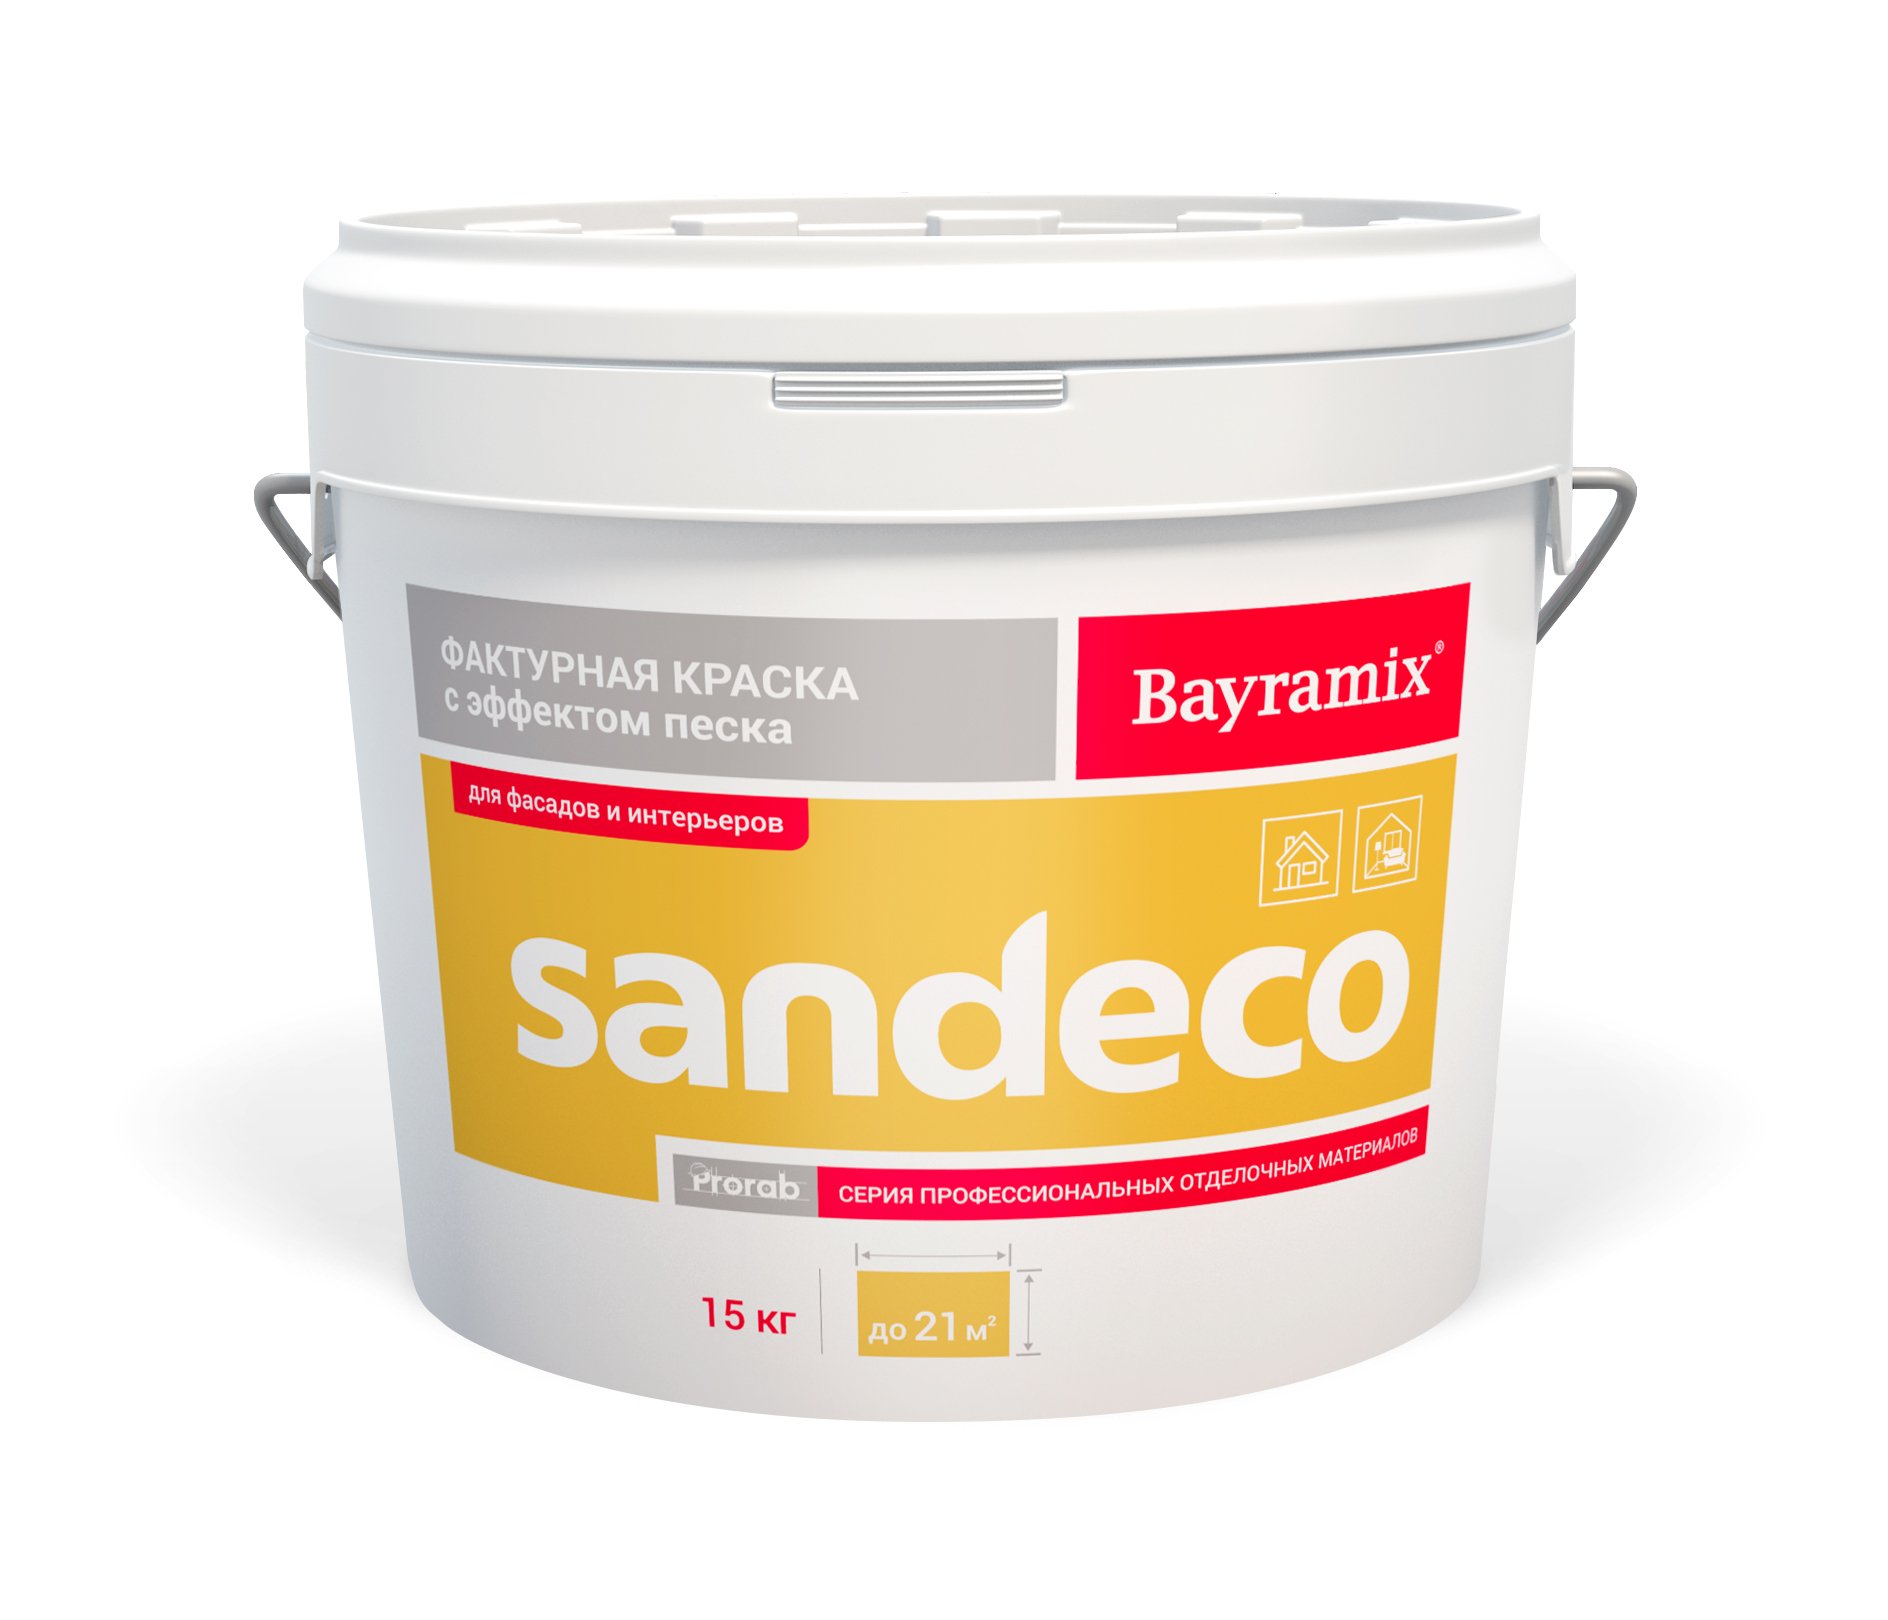 Фактурная краска Bayramix Sandeco для наружных и внутренних работ, 15 кг